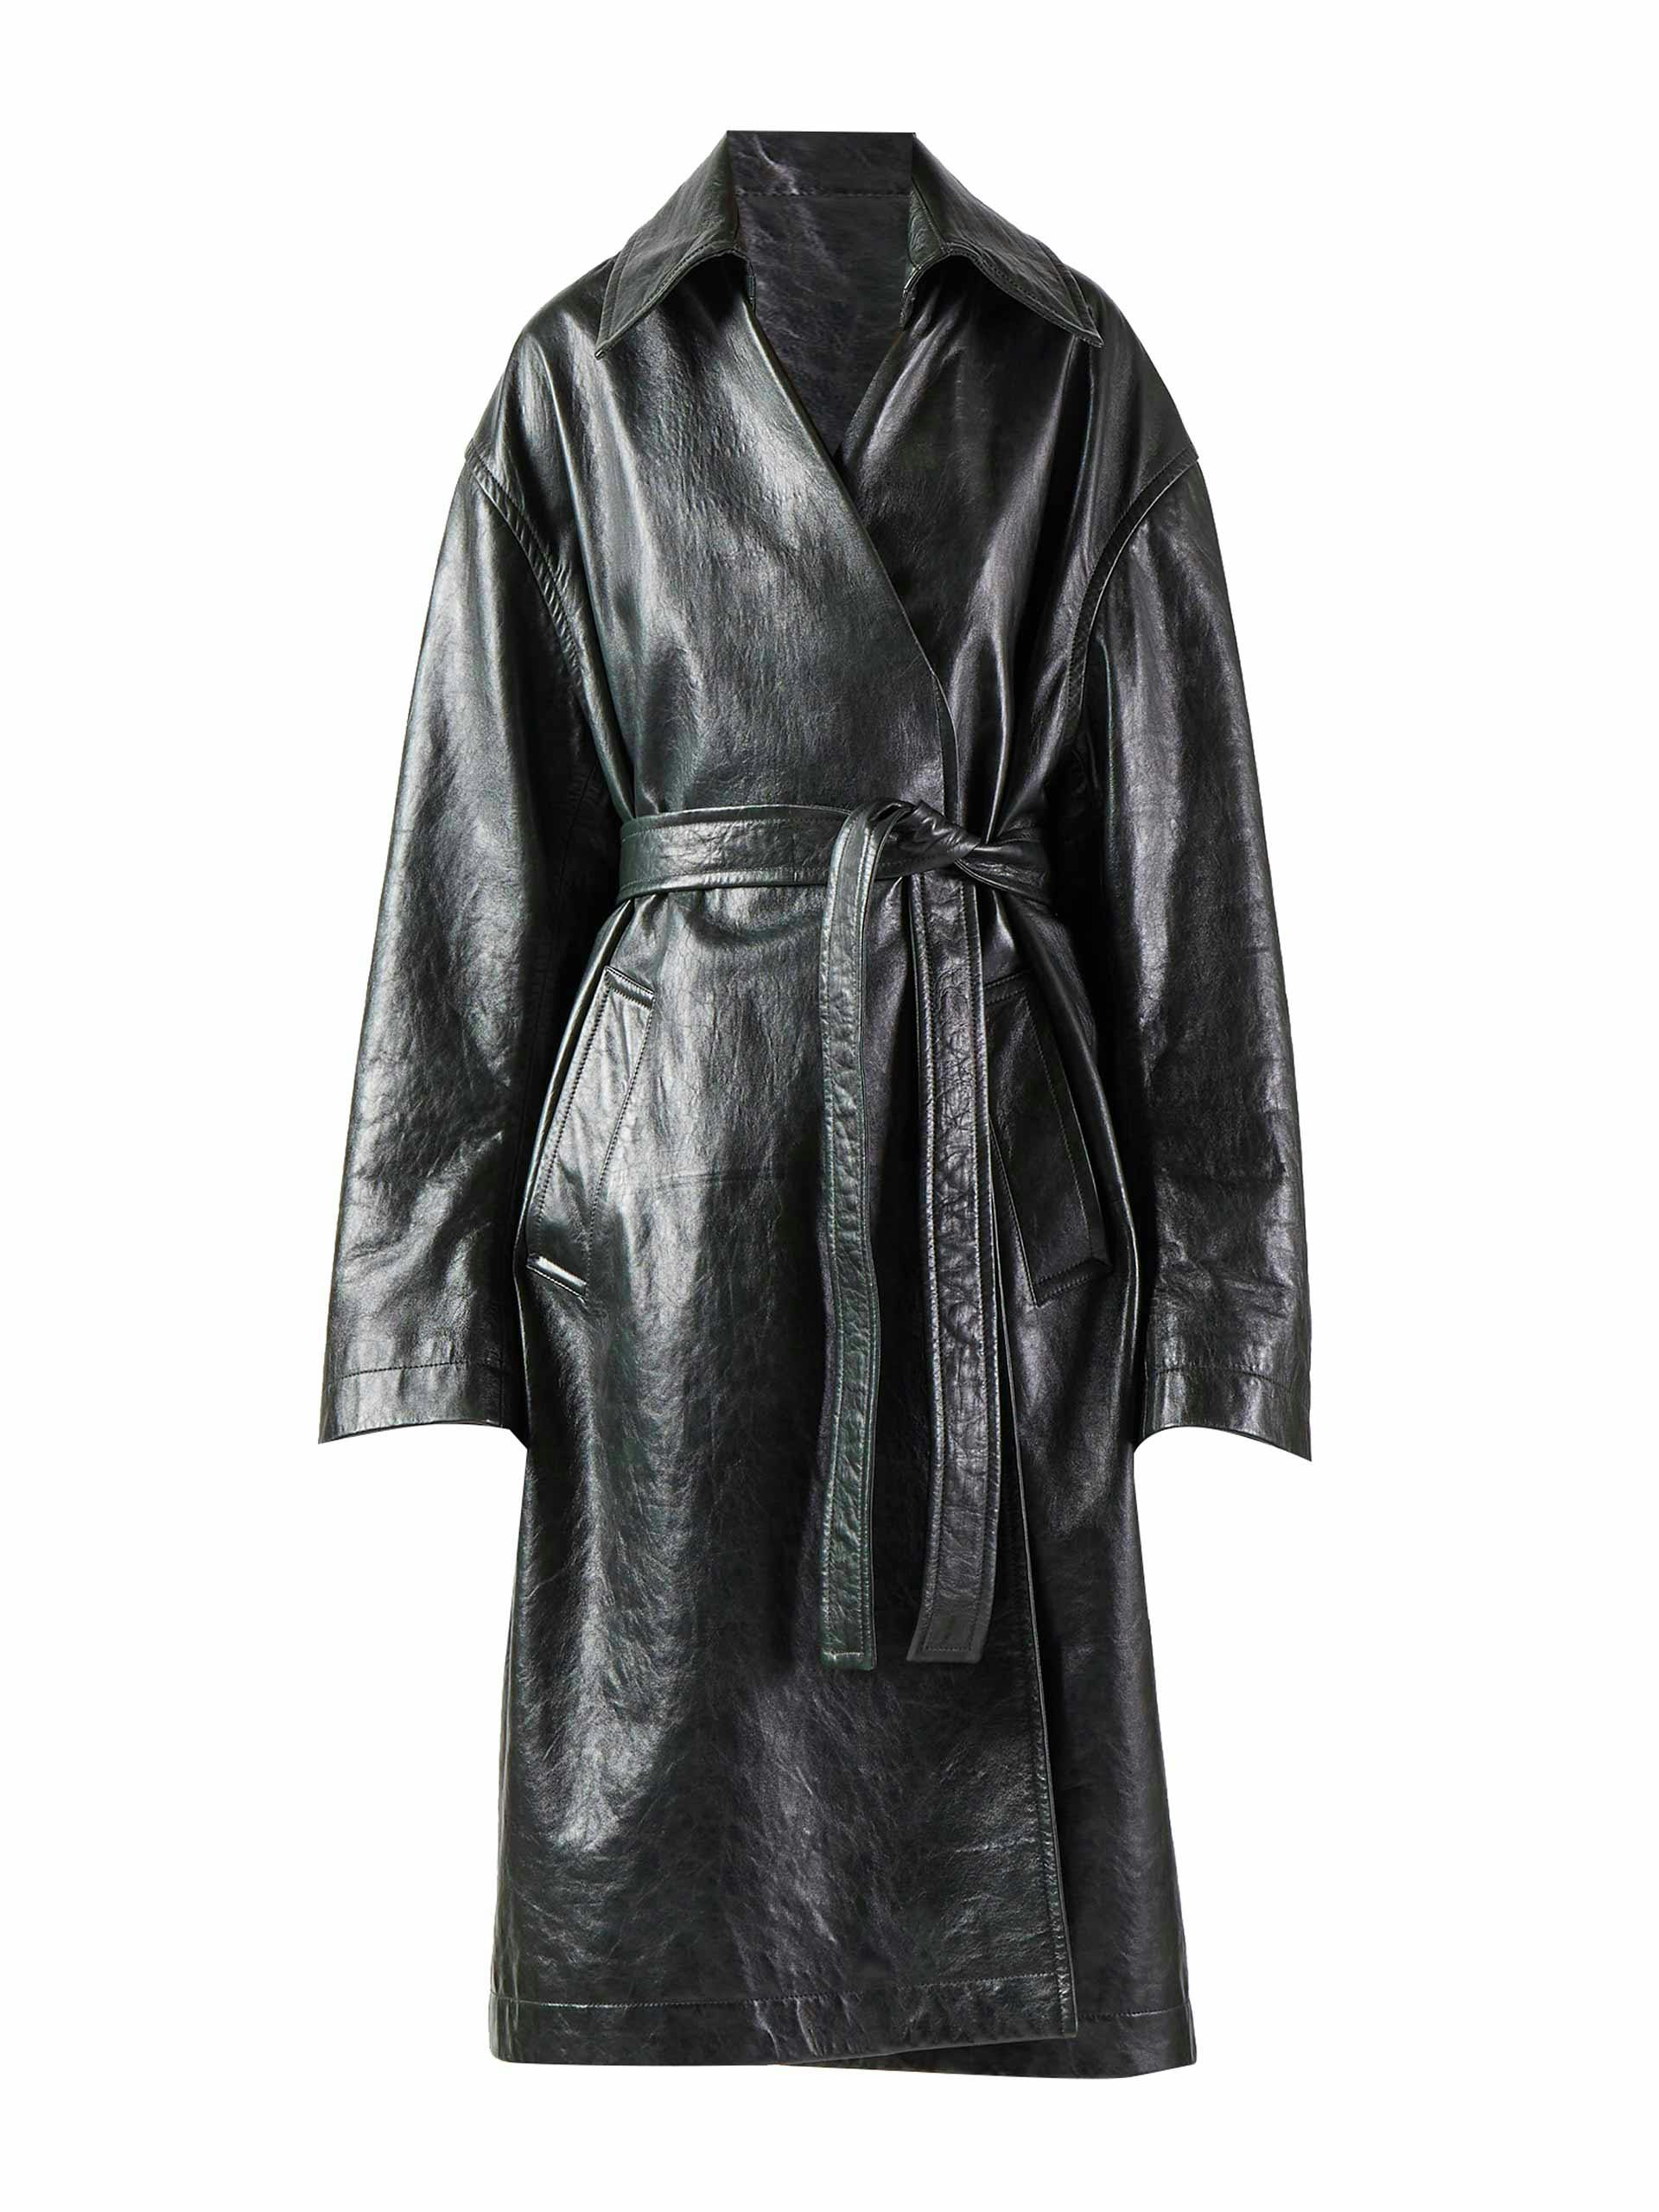 Belted black leather coat